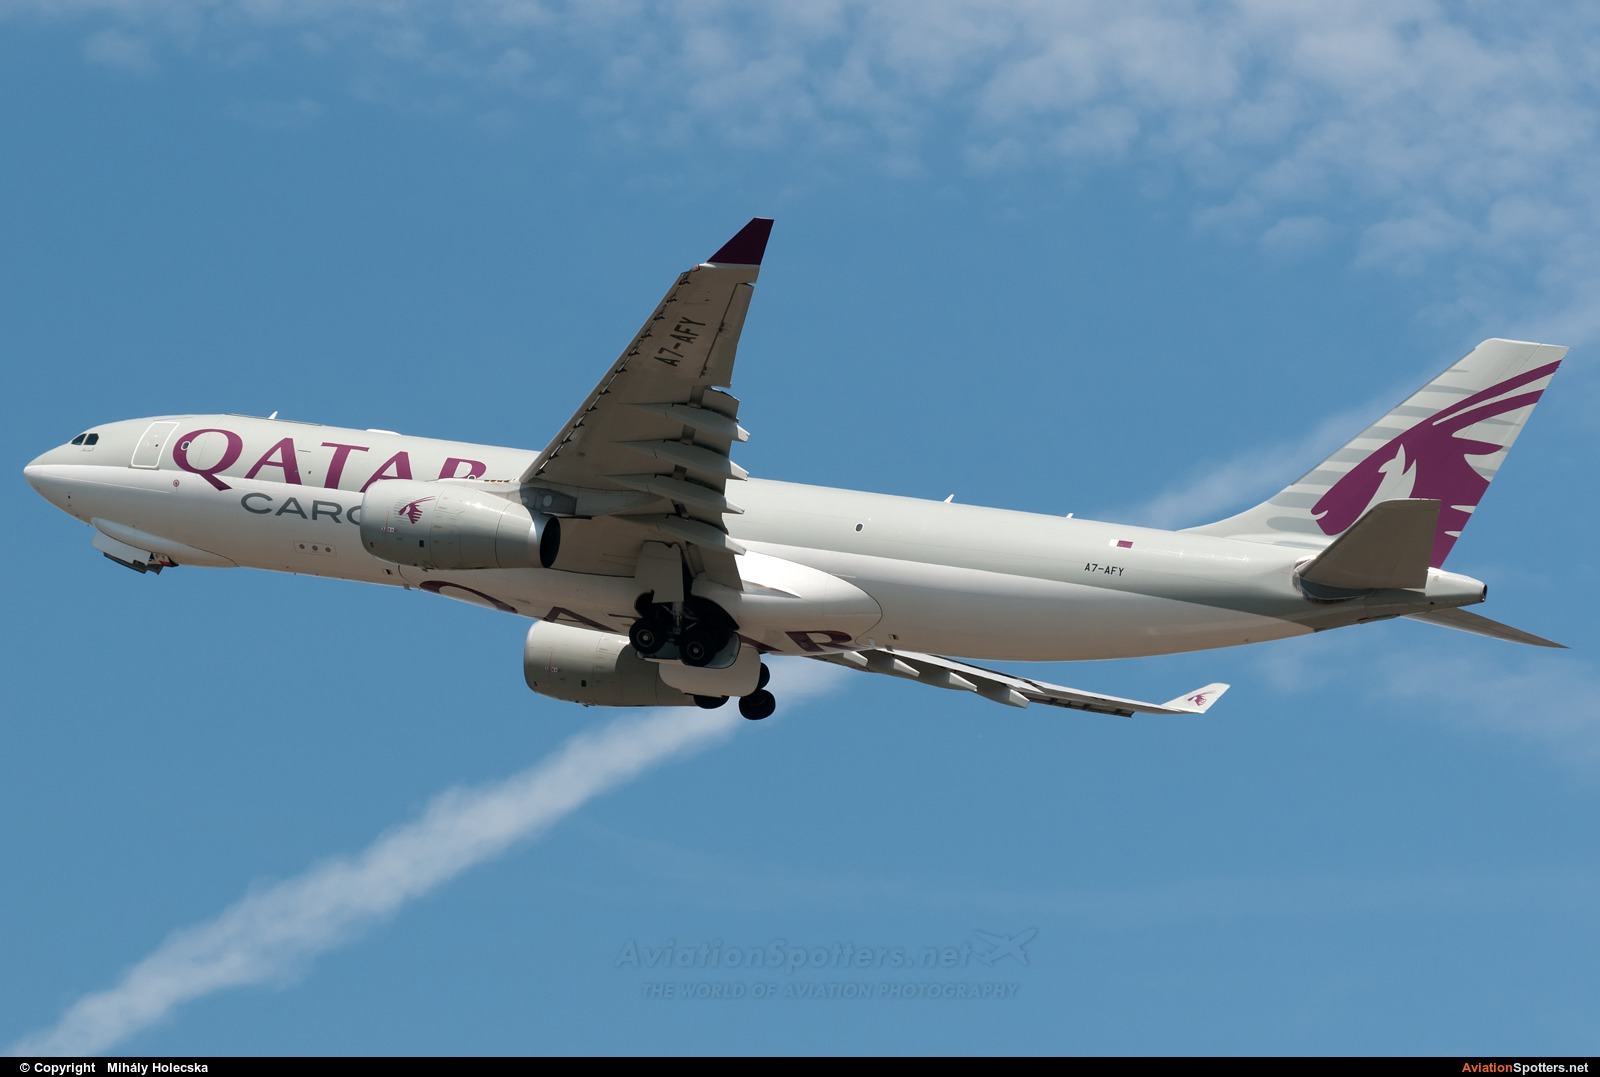 Qatar Airways Cargo  -  A330-243  (A7-AFY) By Mihály Holecska (Misixx)